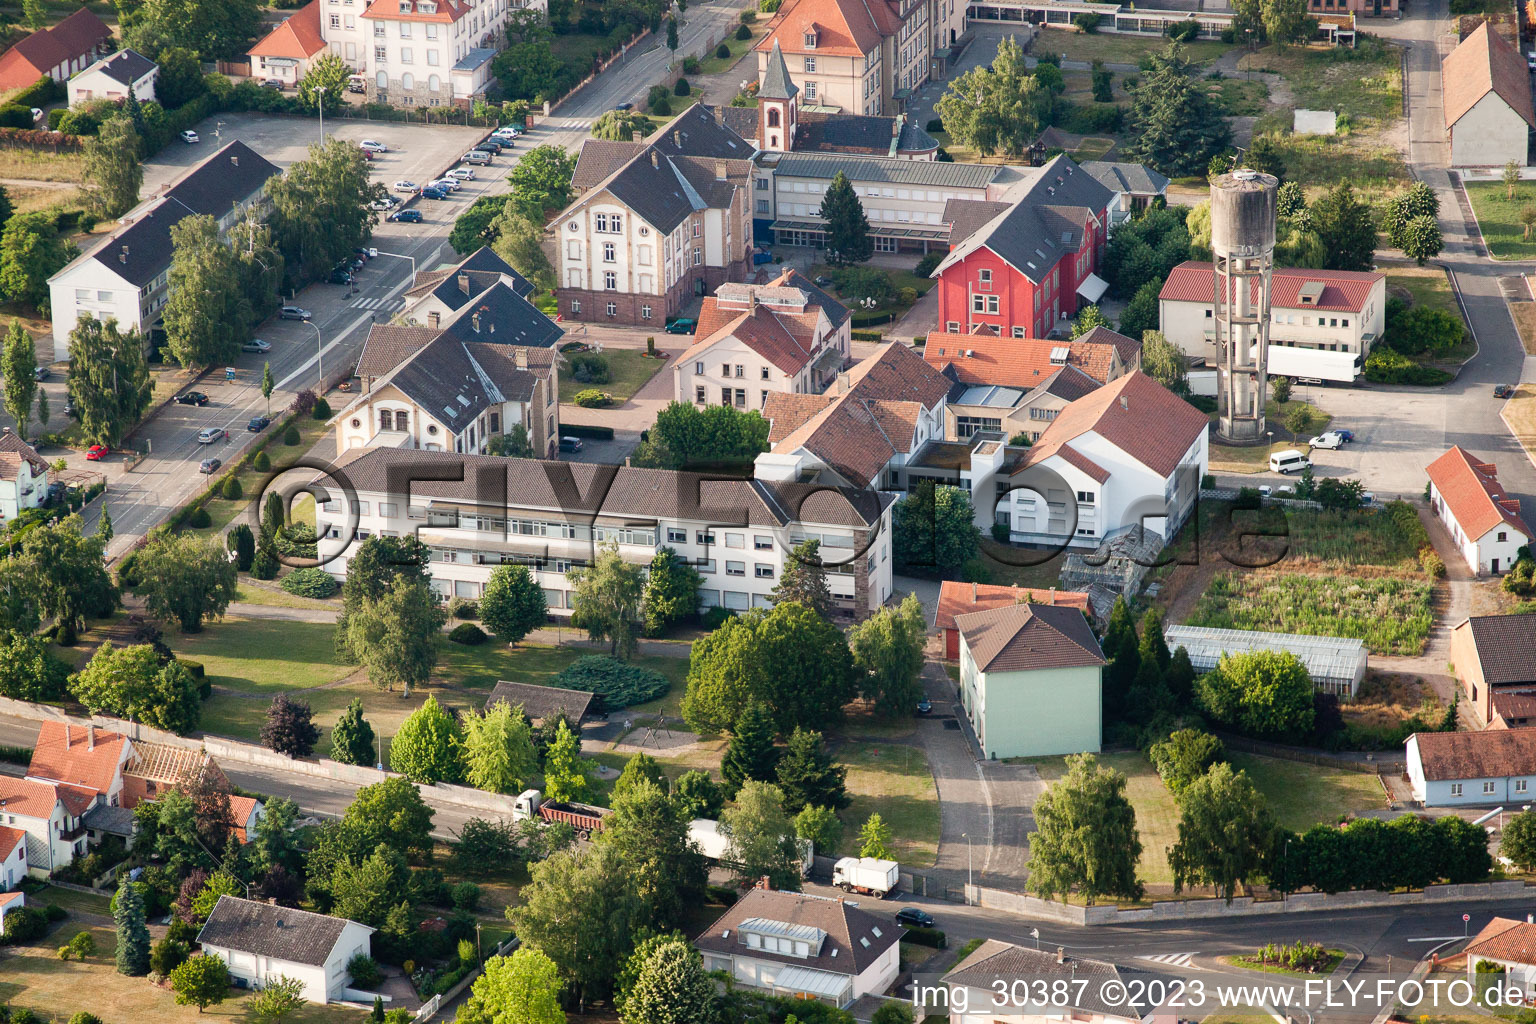 Bischwiller im Bundesland Bas-Rhin, Frankreich von der Drohne aus gesehen